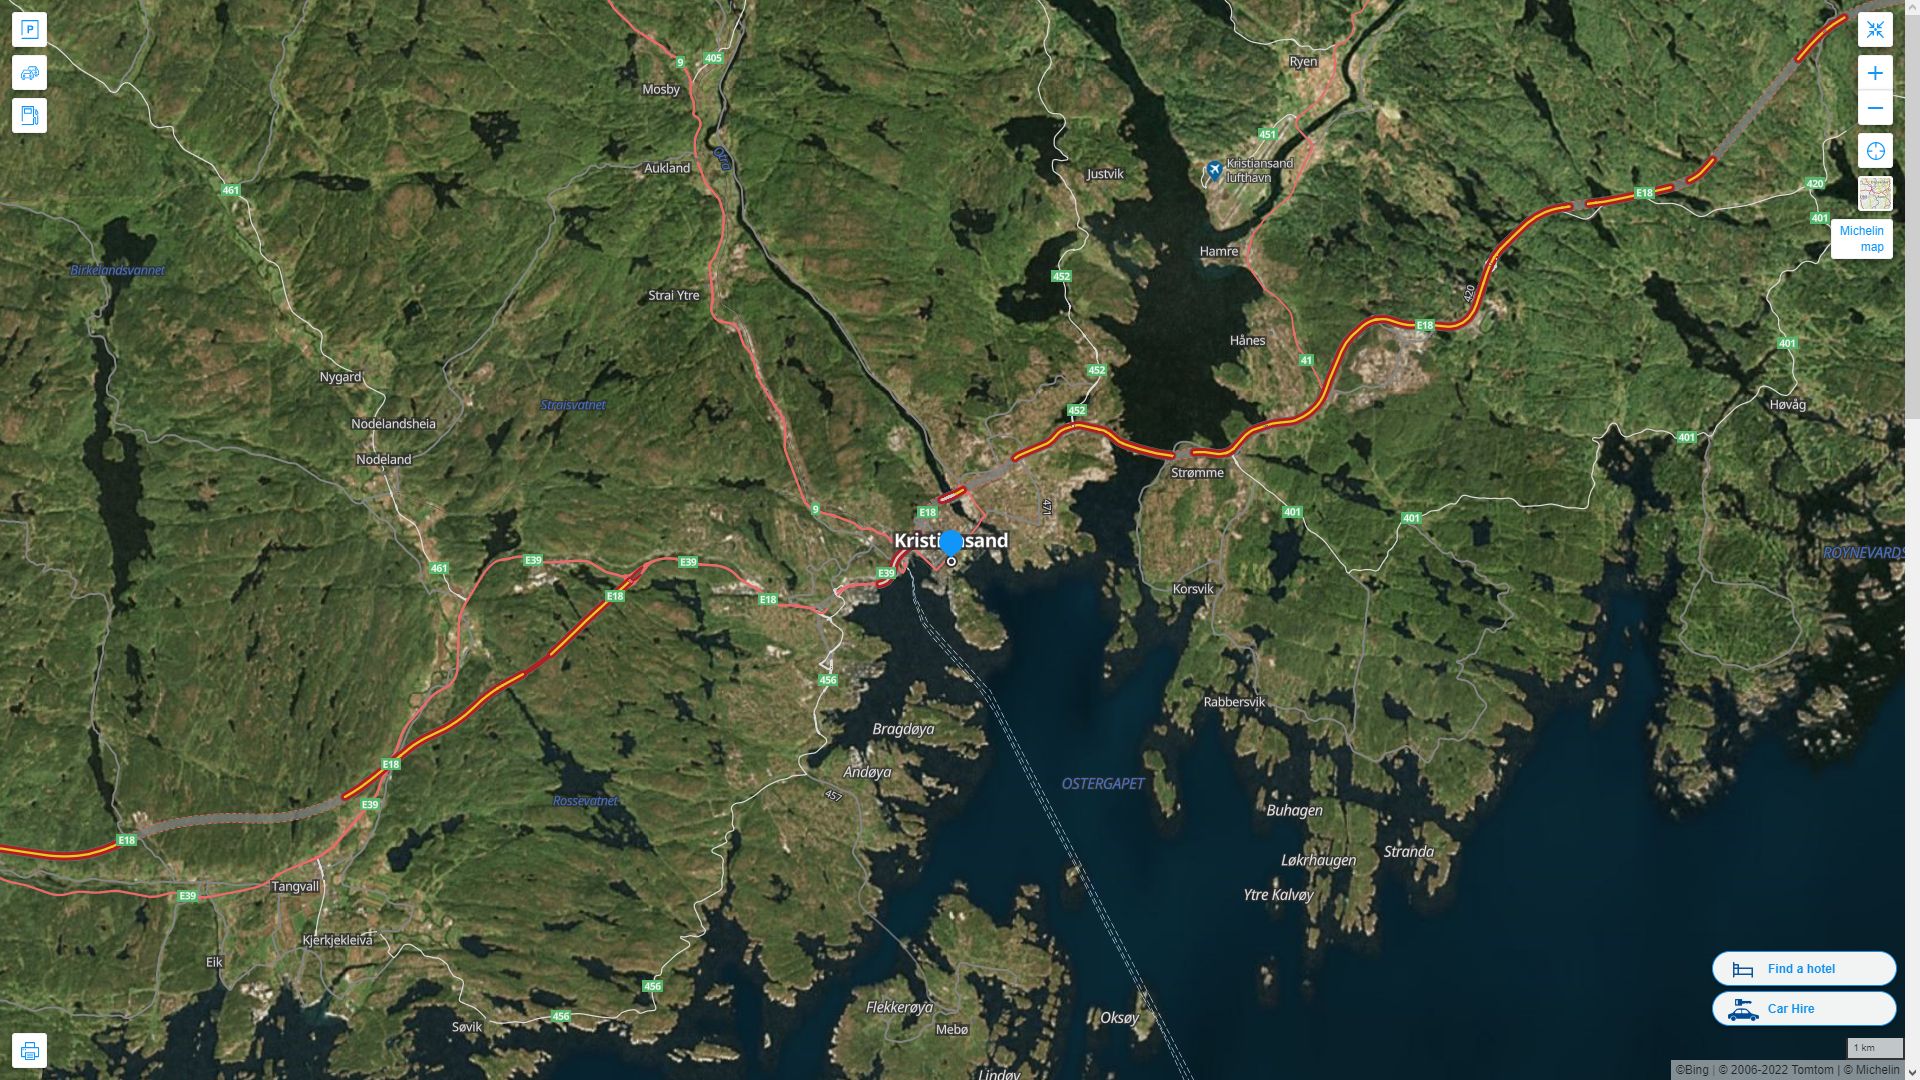 Kristiansand Norvege Autoroute et carte routiere avec vue satellite